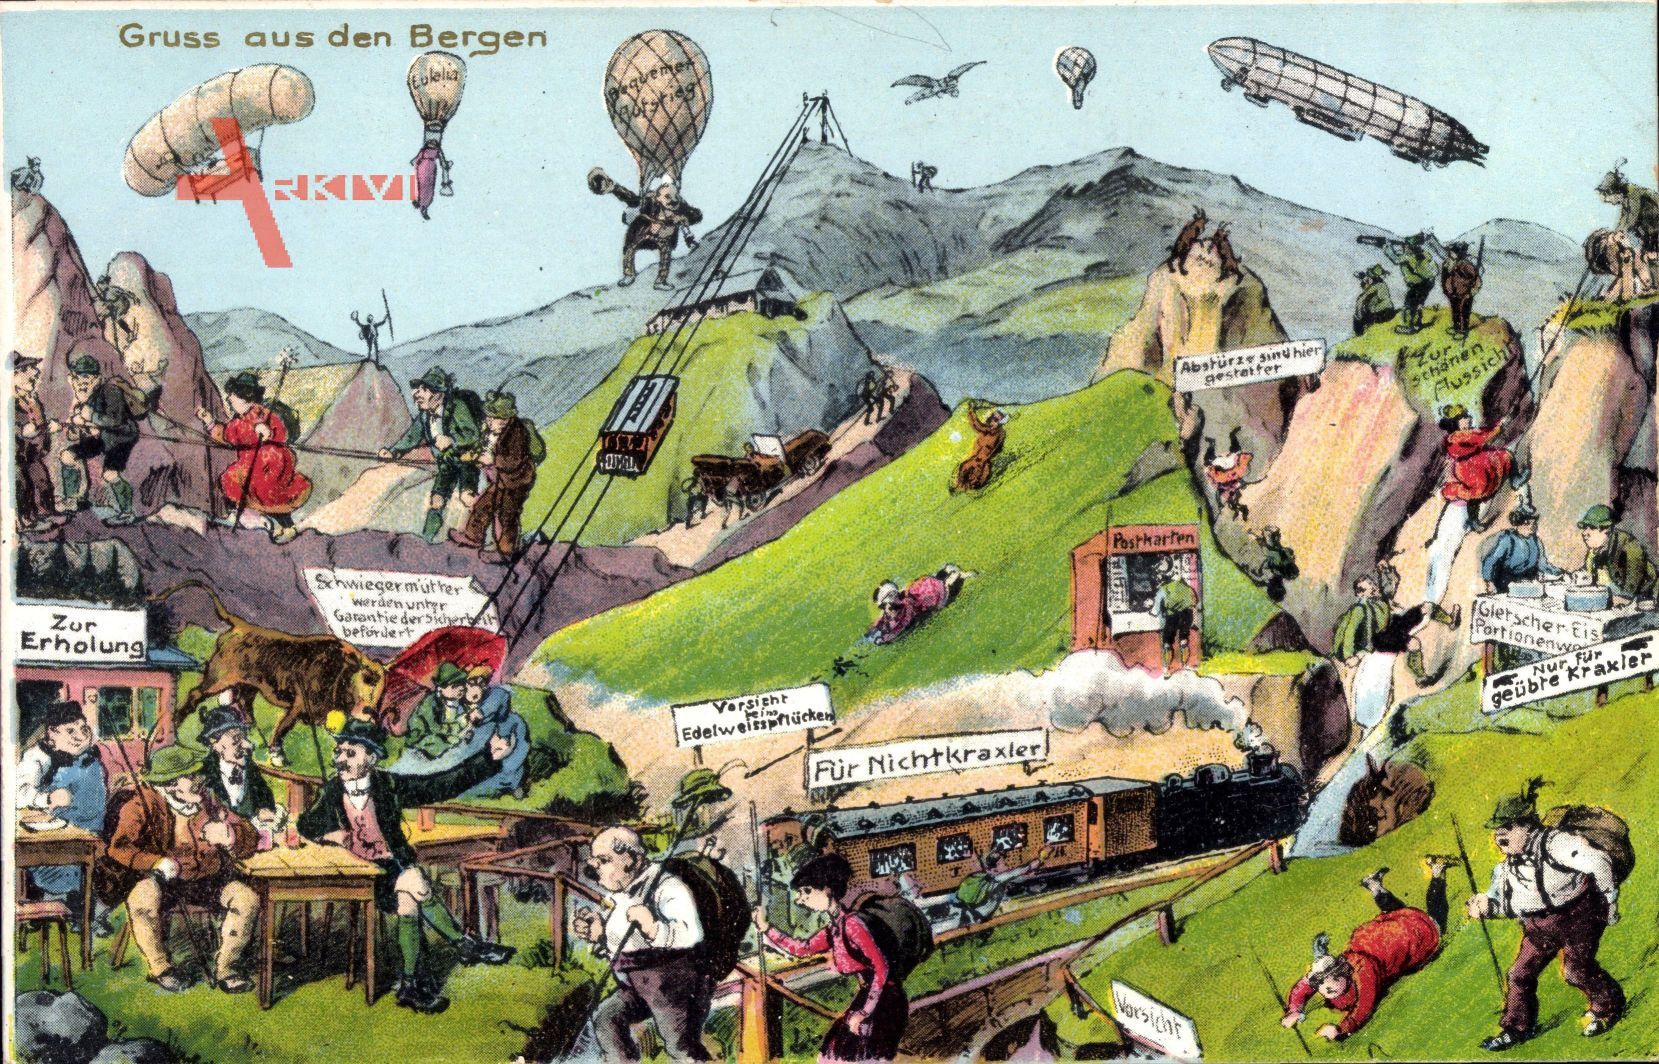 Zukunft Gruß aus den Bergen, Zeppeline, Ballons, Eisenbahn, Bergsteiger